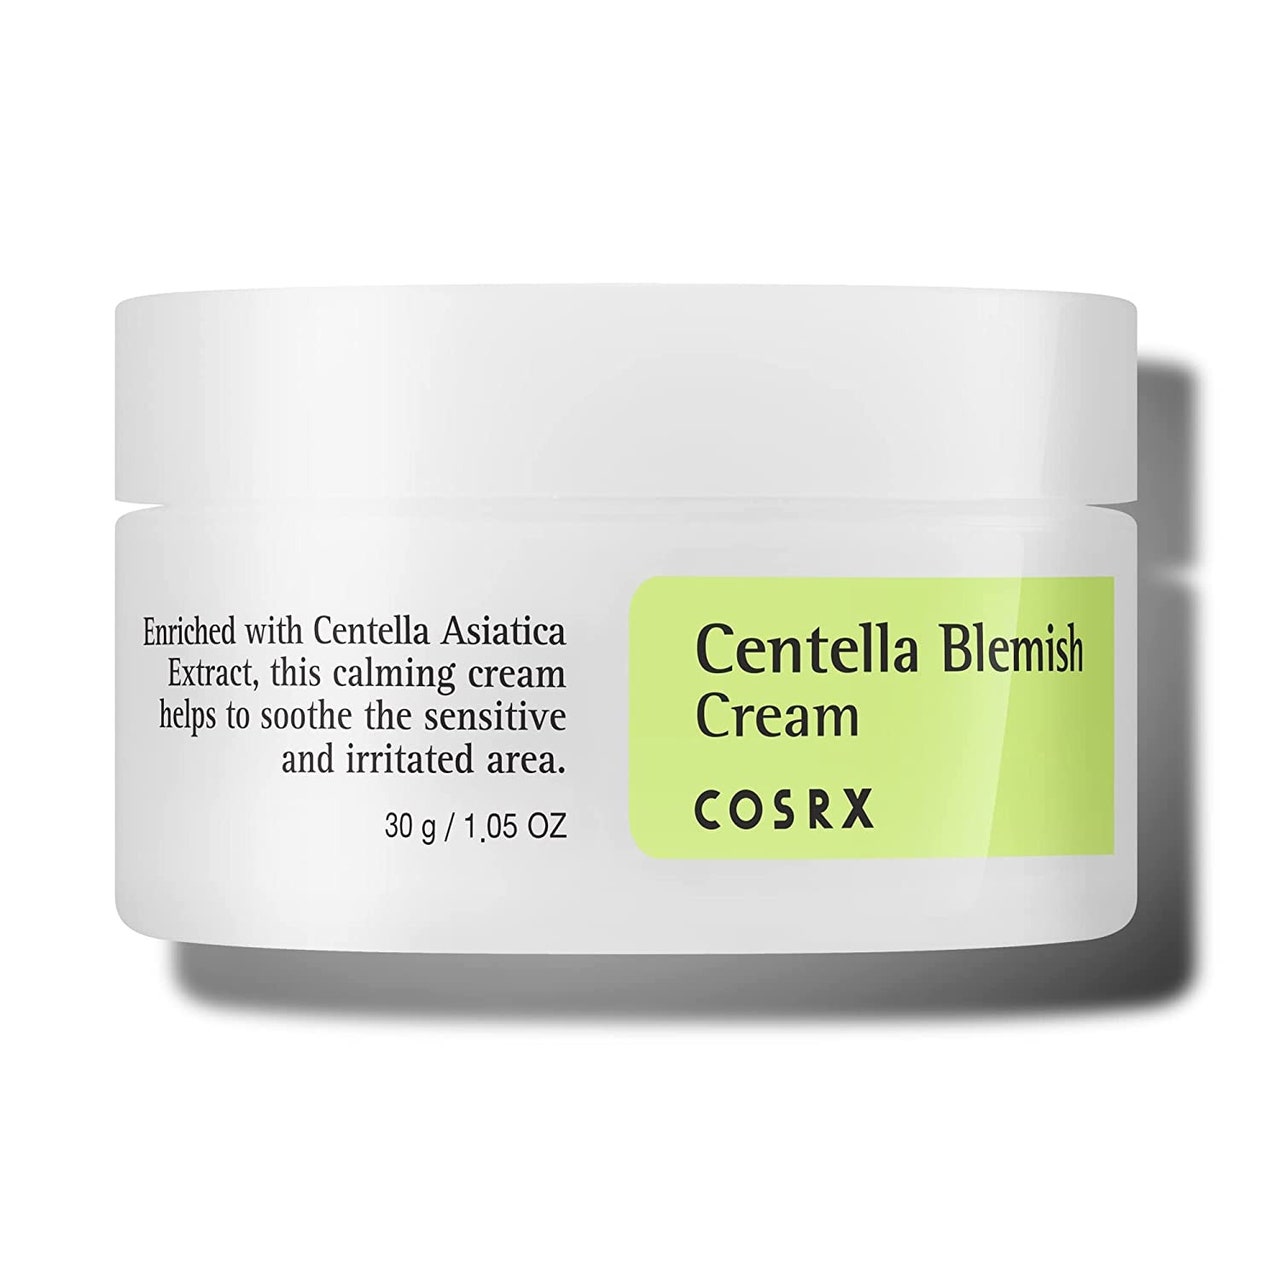 Cosrx Centella Blemish Cremeweißes Glas mit grünem Etikett auf weißem Hintergrund